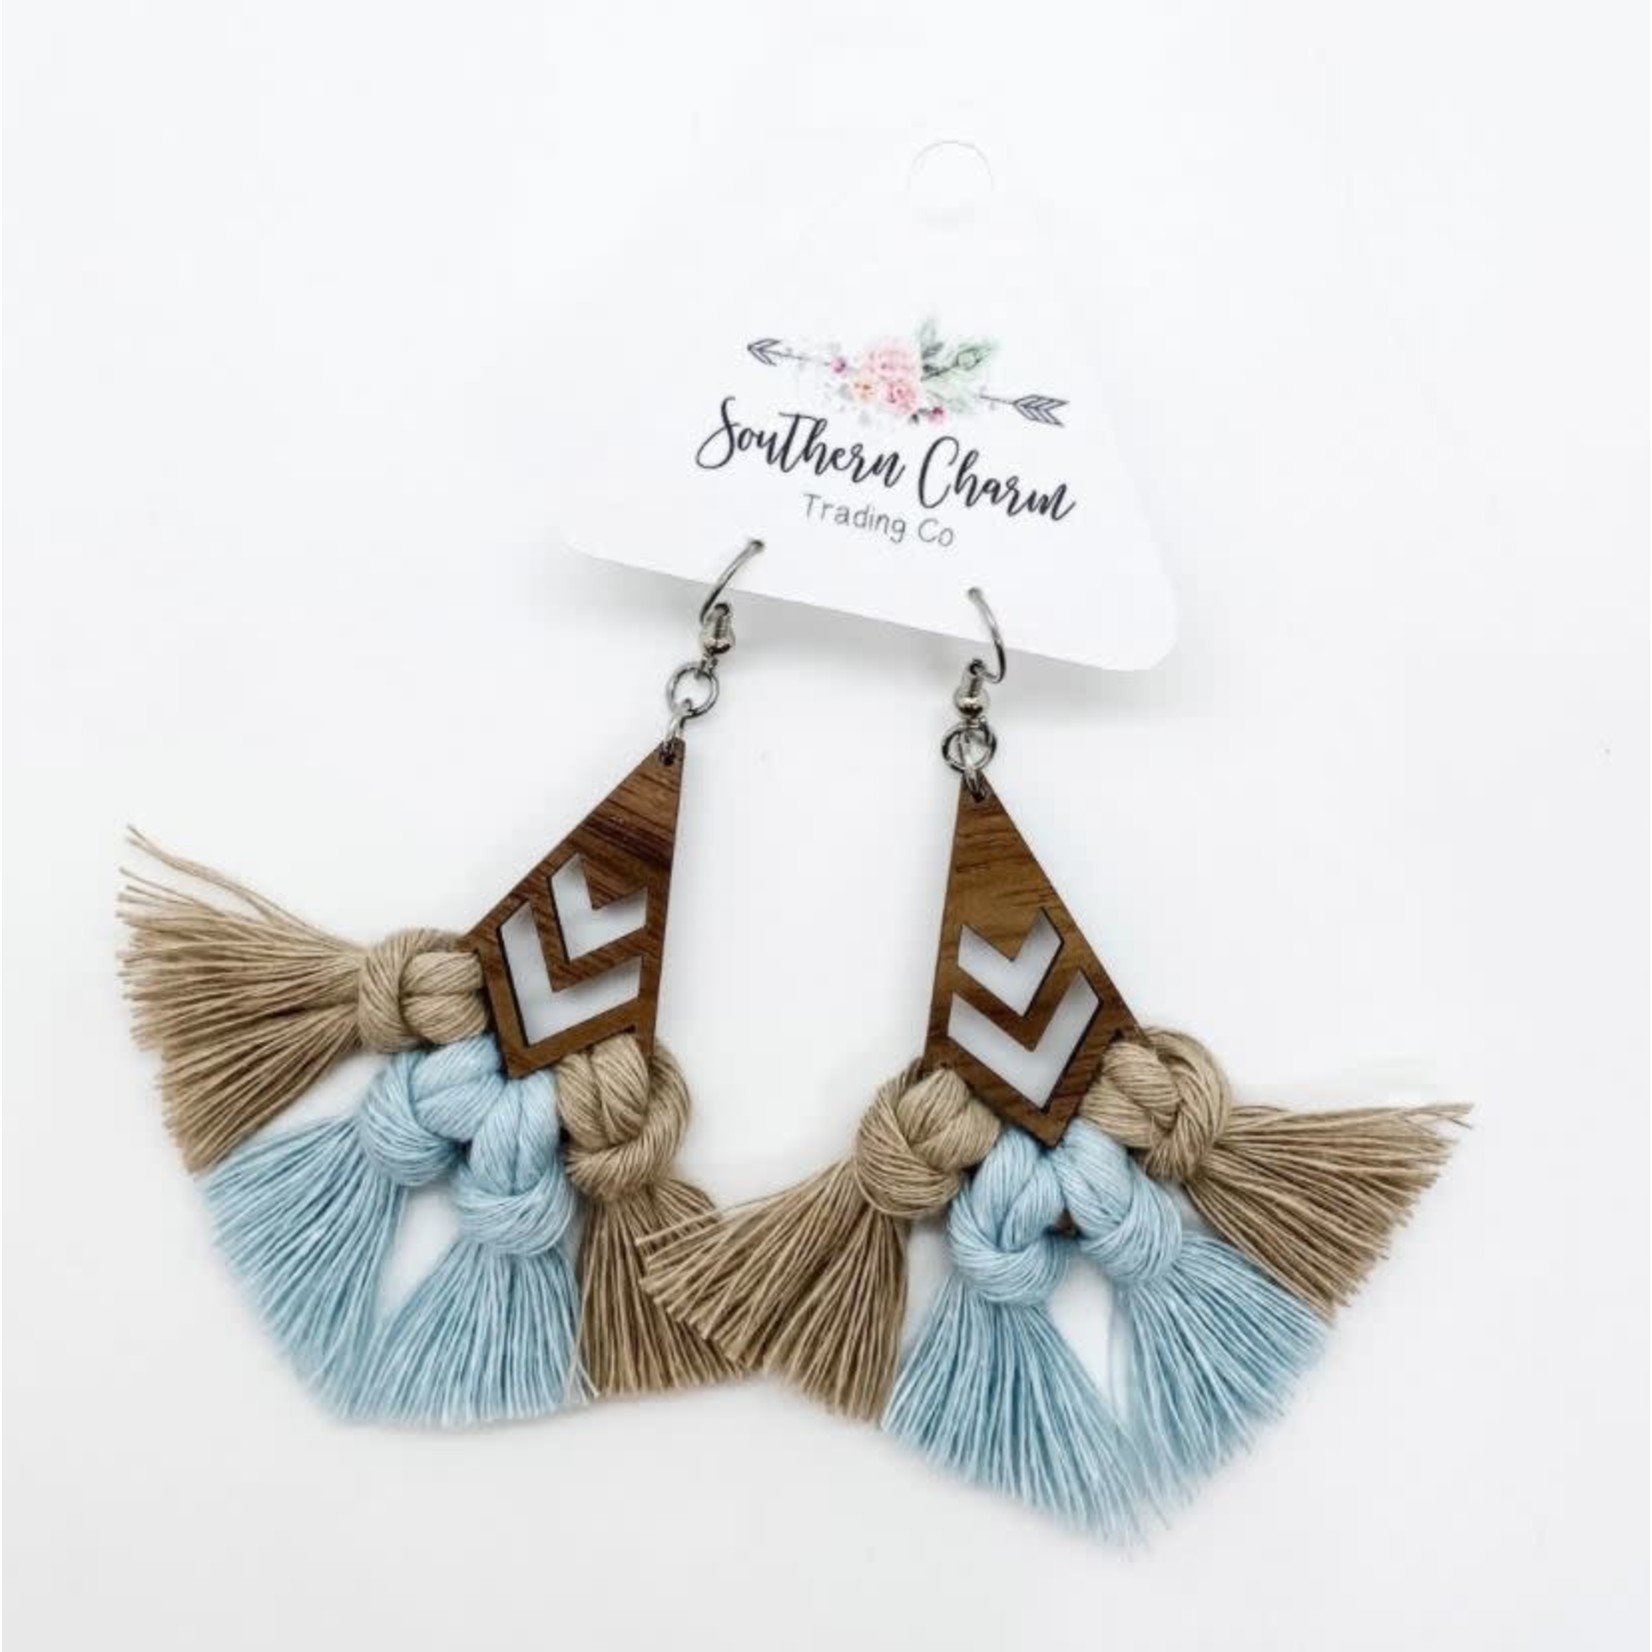 Southern Charm Amelia Macrame Earrings Sand & Misty Blue